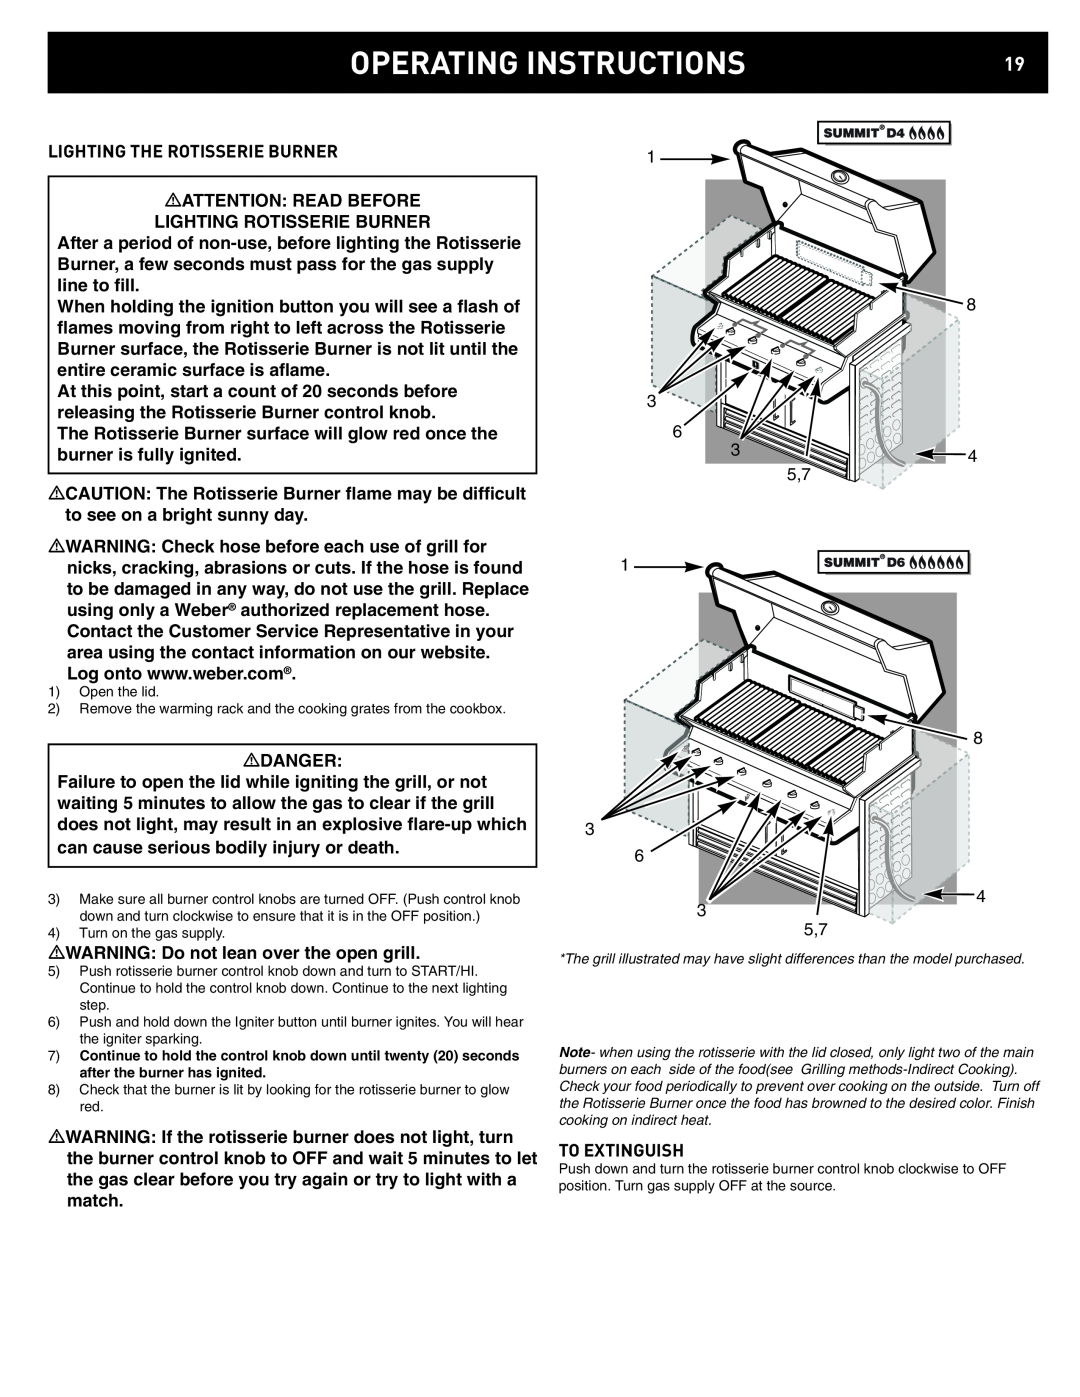 Weber D4, D6 manual Operating Instructions 